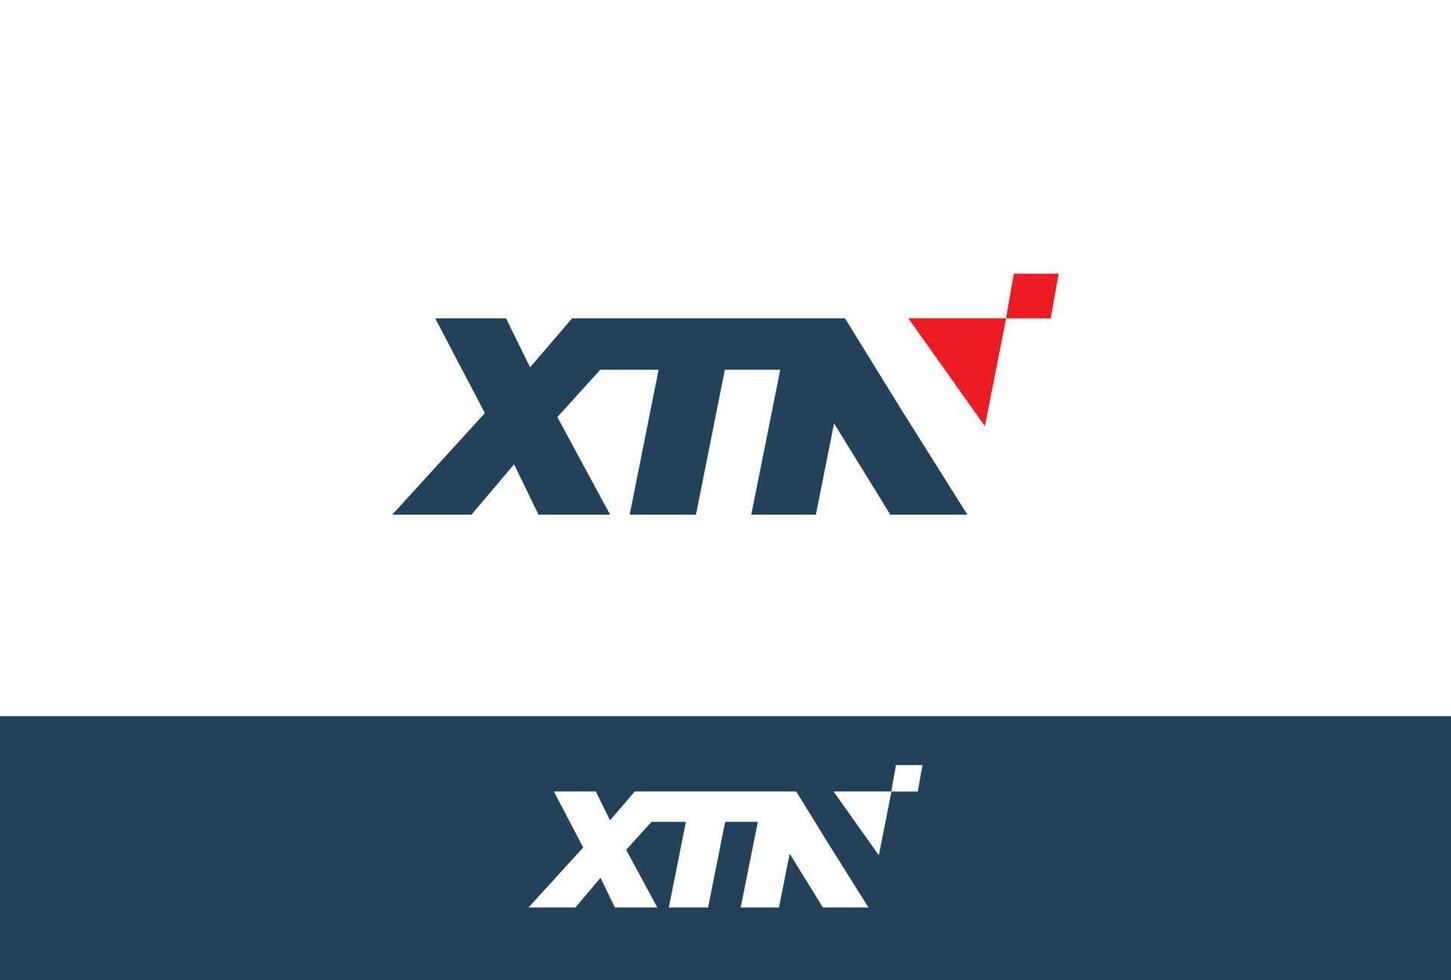 xtn logo met rood minimalistische stijl techniek, perfect met logo bedrijf, agentschap automotive vector